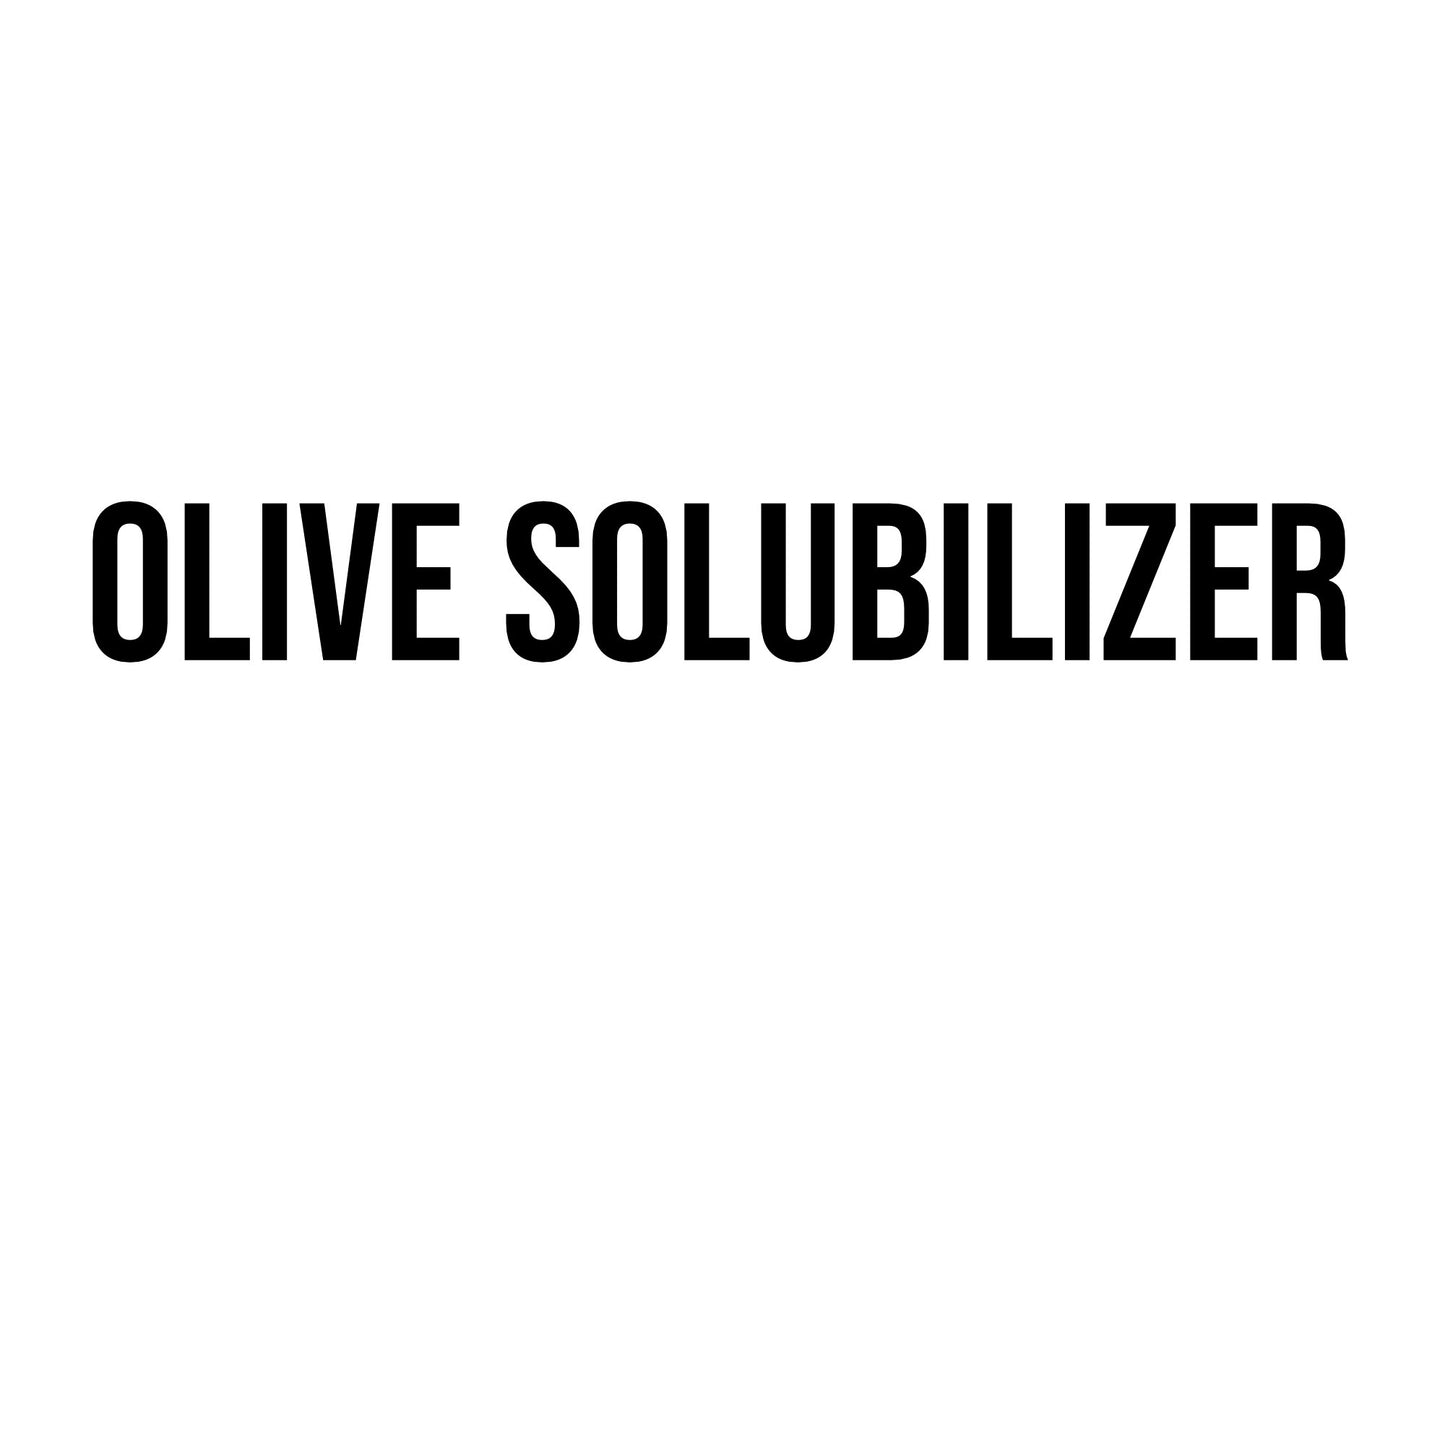 Olive Solubilizer